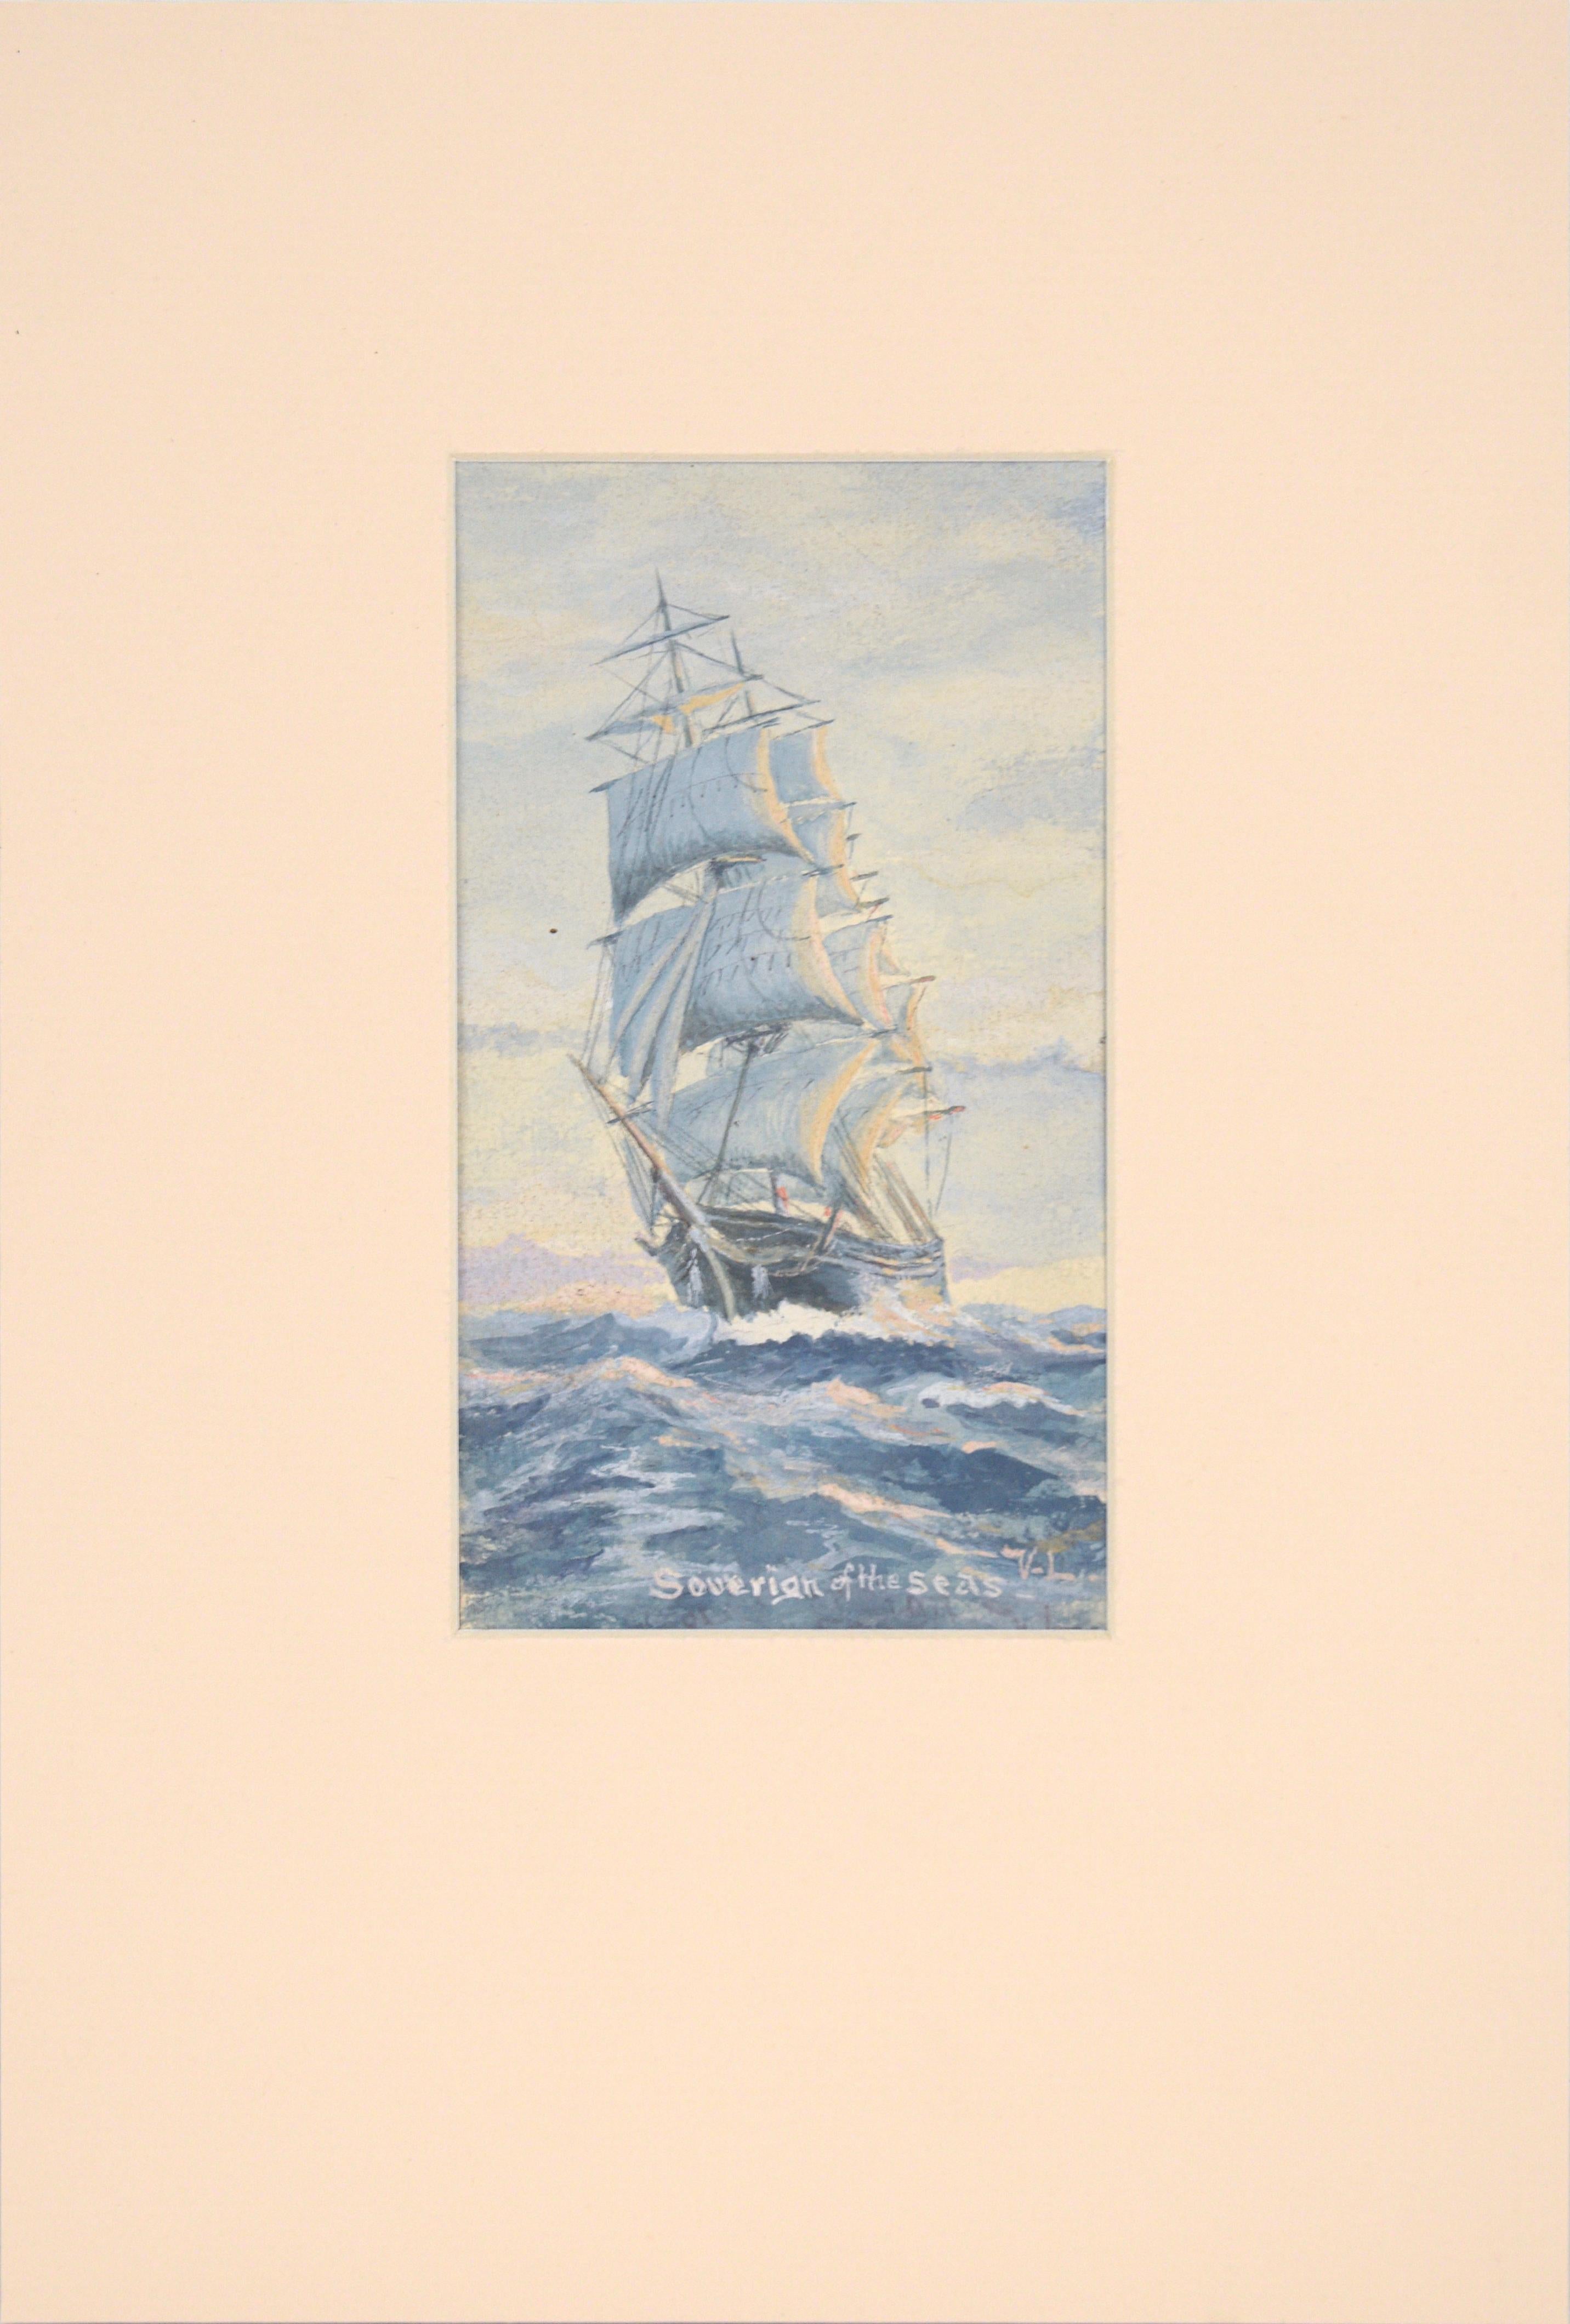 "Soverign of the Seas" (Soverign des mers) - paysage marin avec bateau à voile